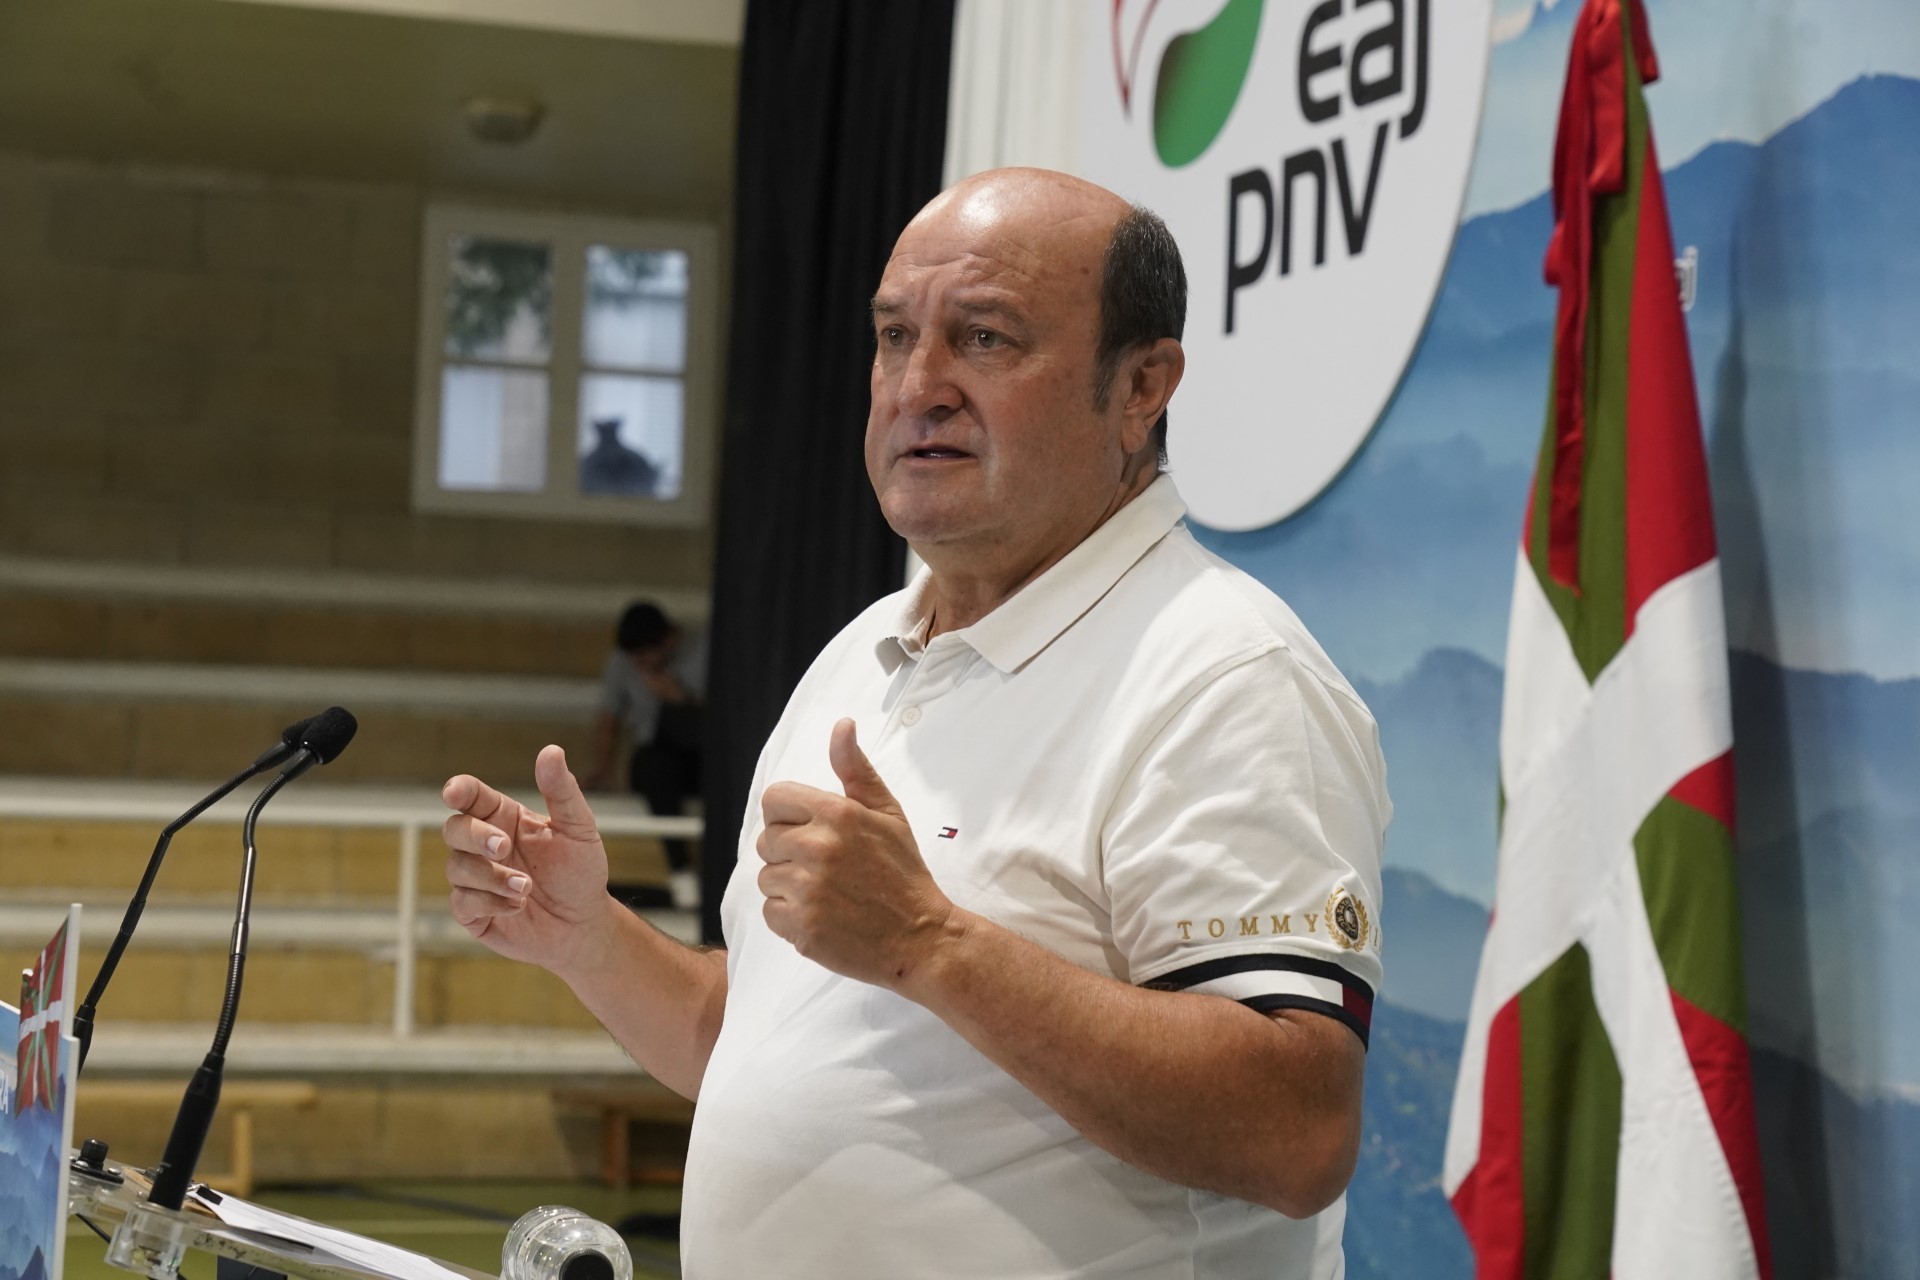 El presidente del PNV Andoni Ortuzar durante su intervencin en el acto organizado en Zarautz.